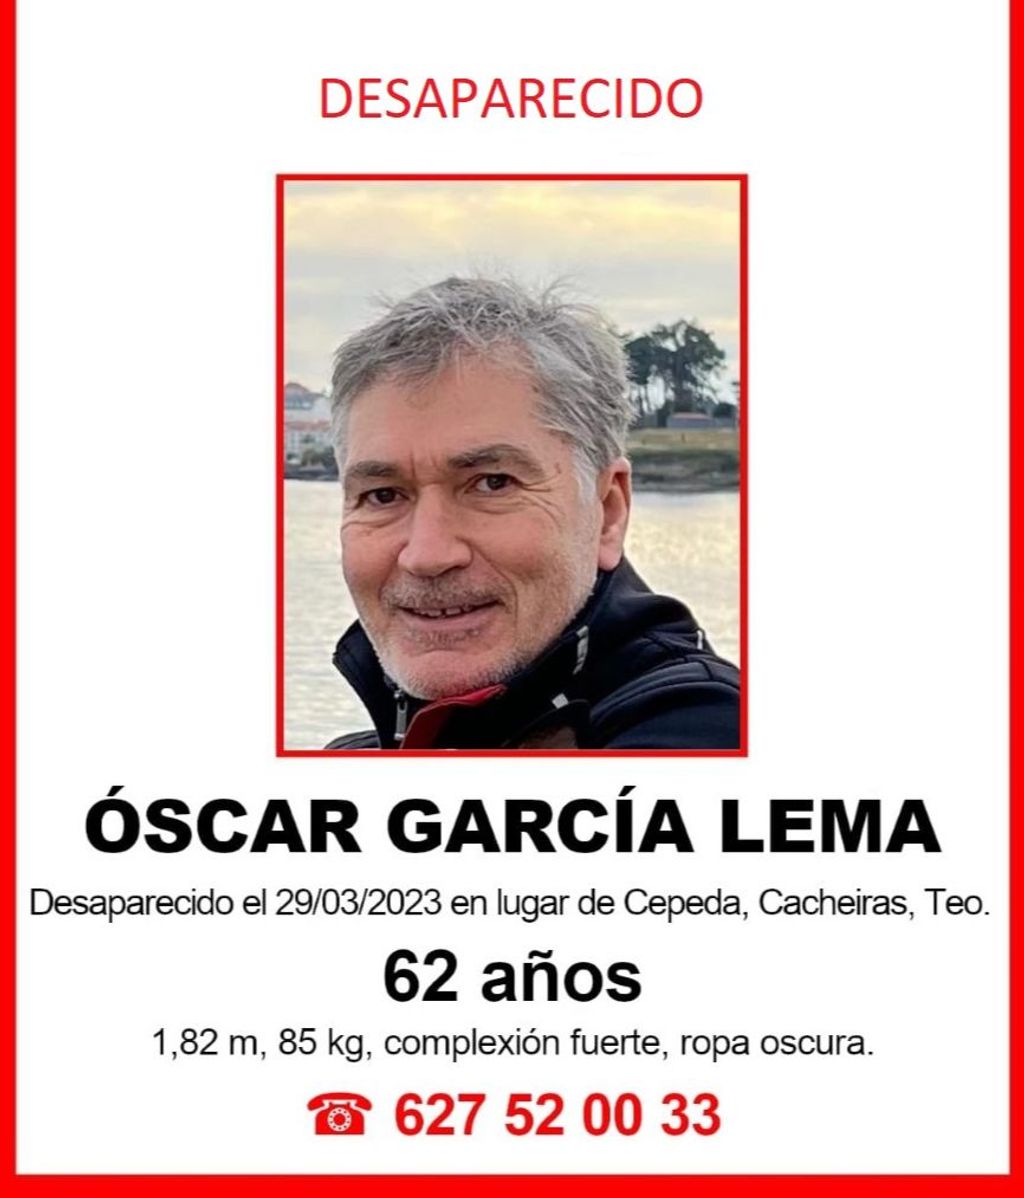 Óscar García Lema, el vecino de A Coruña desaparecido